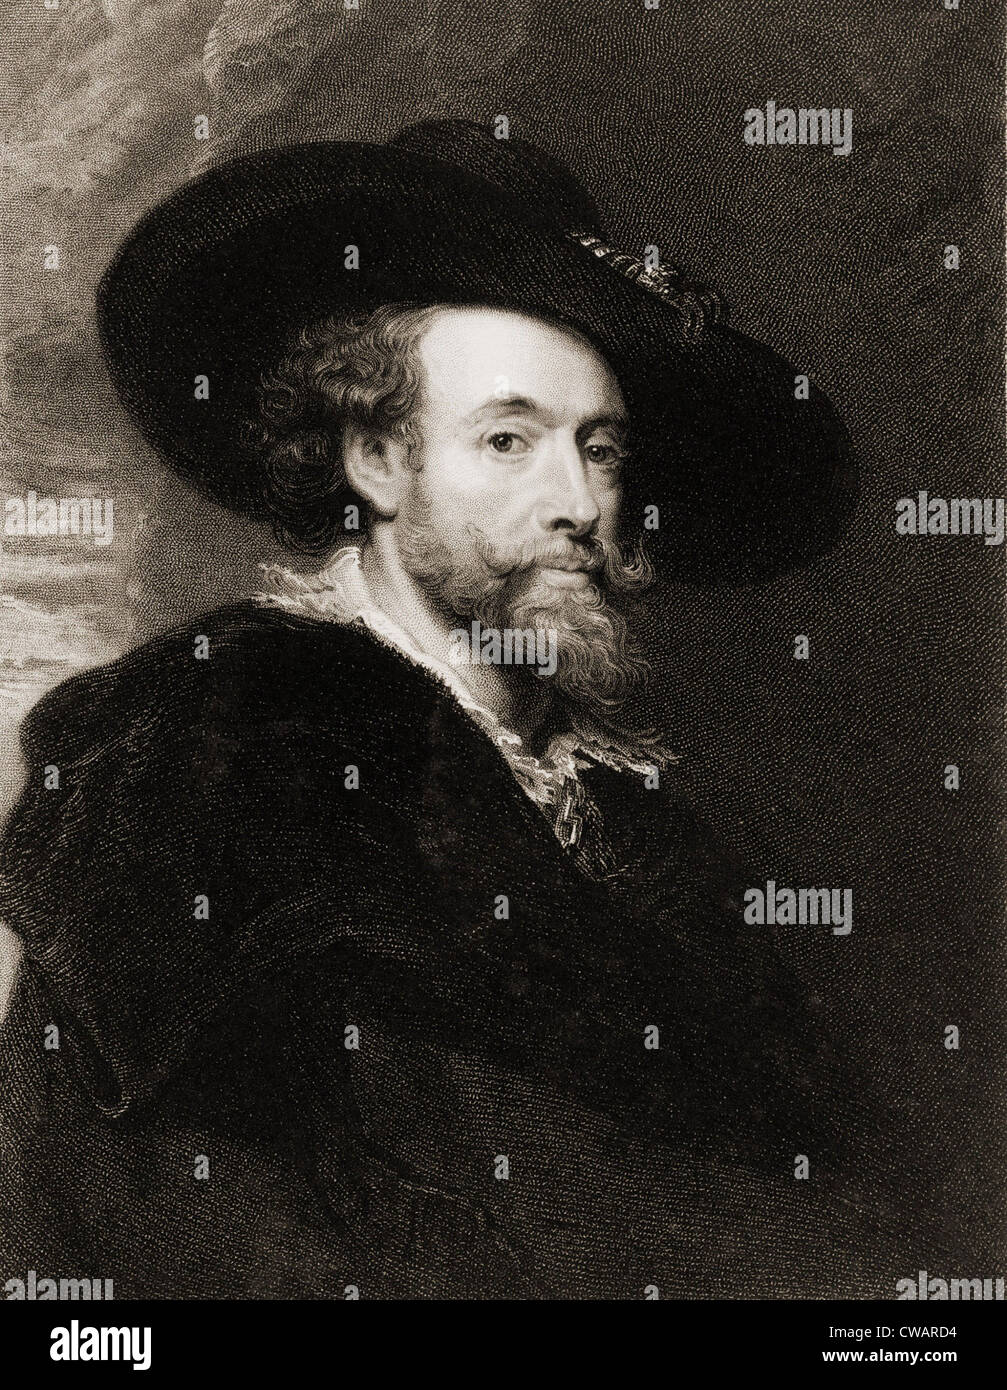 Rubens (1577-1640), flämischer Barock Maler im Jahre 1625.  19. Jahrhundert Kupferstich von James Posselwhite. Stockfoto